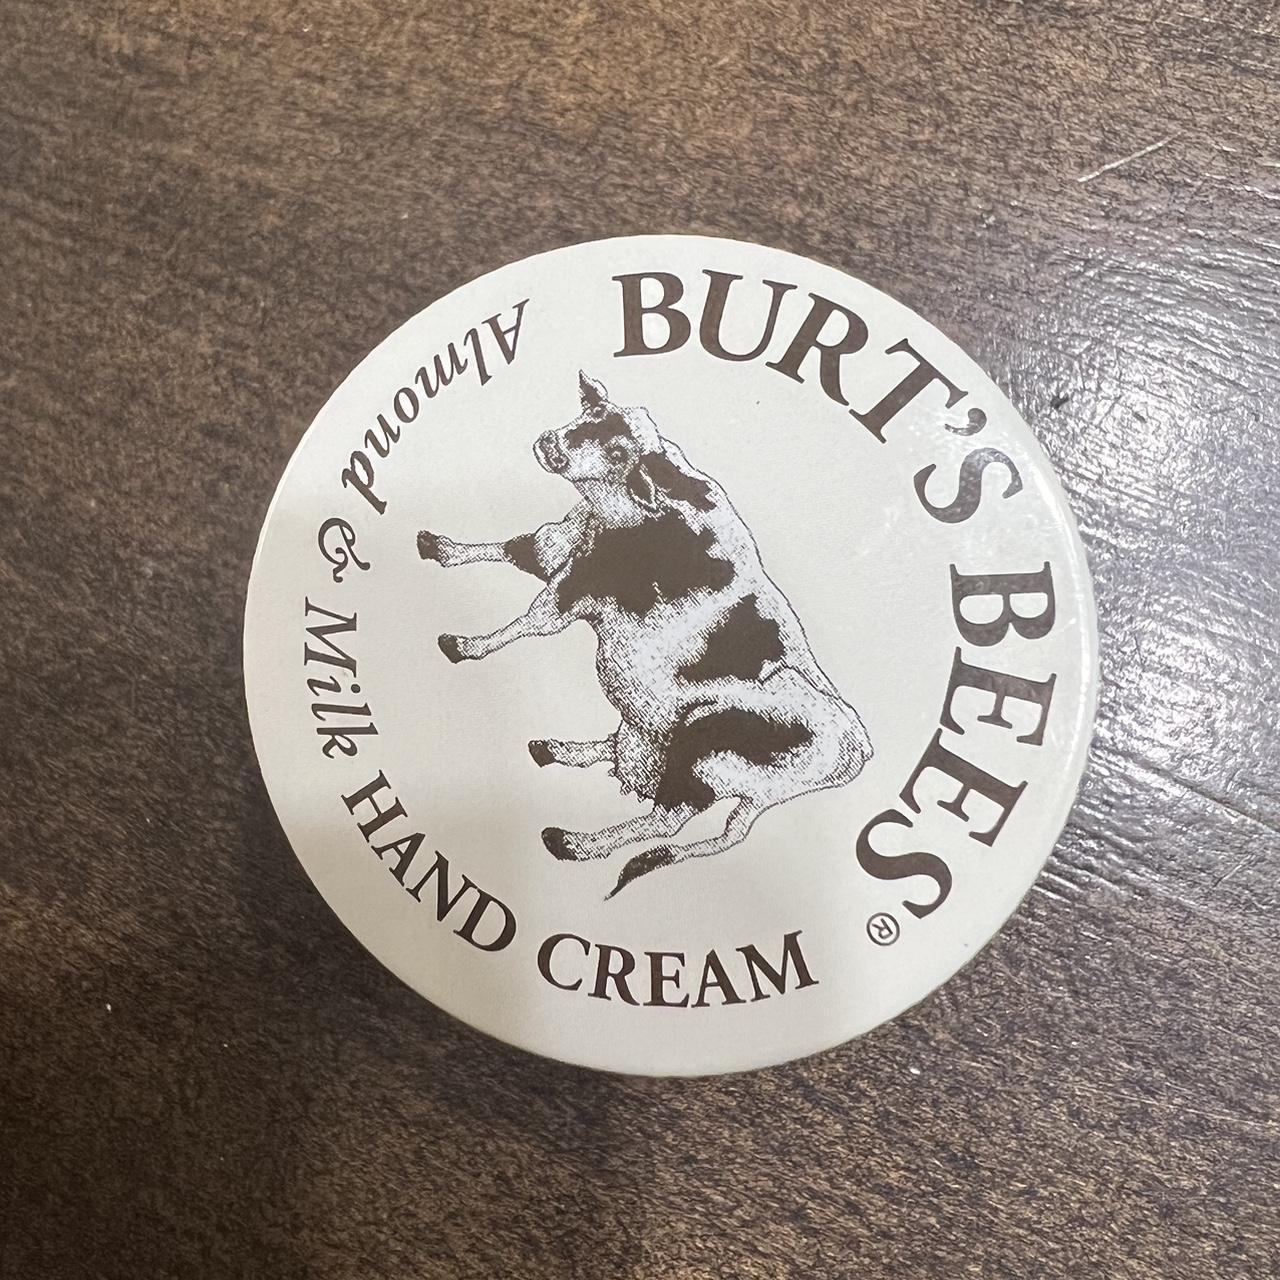 Burt's Bees Cream and White Skincare (3)